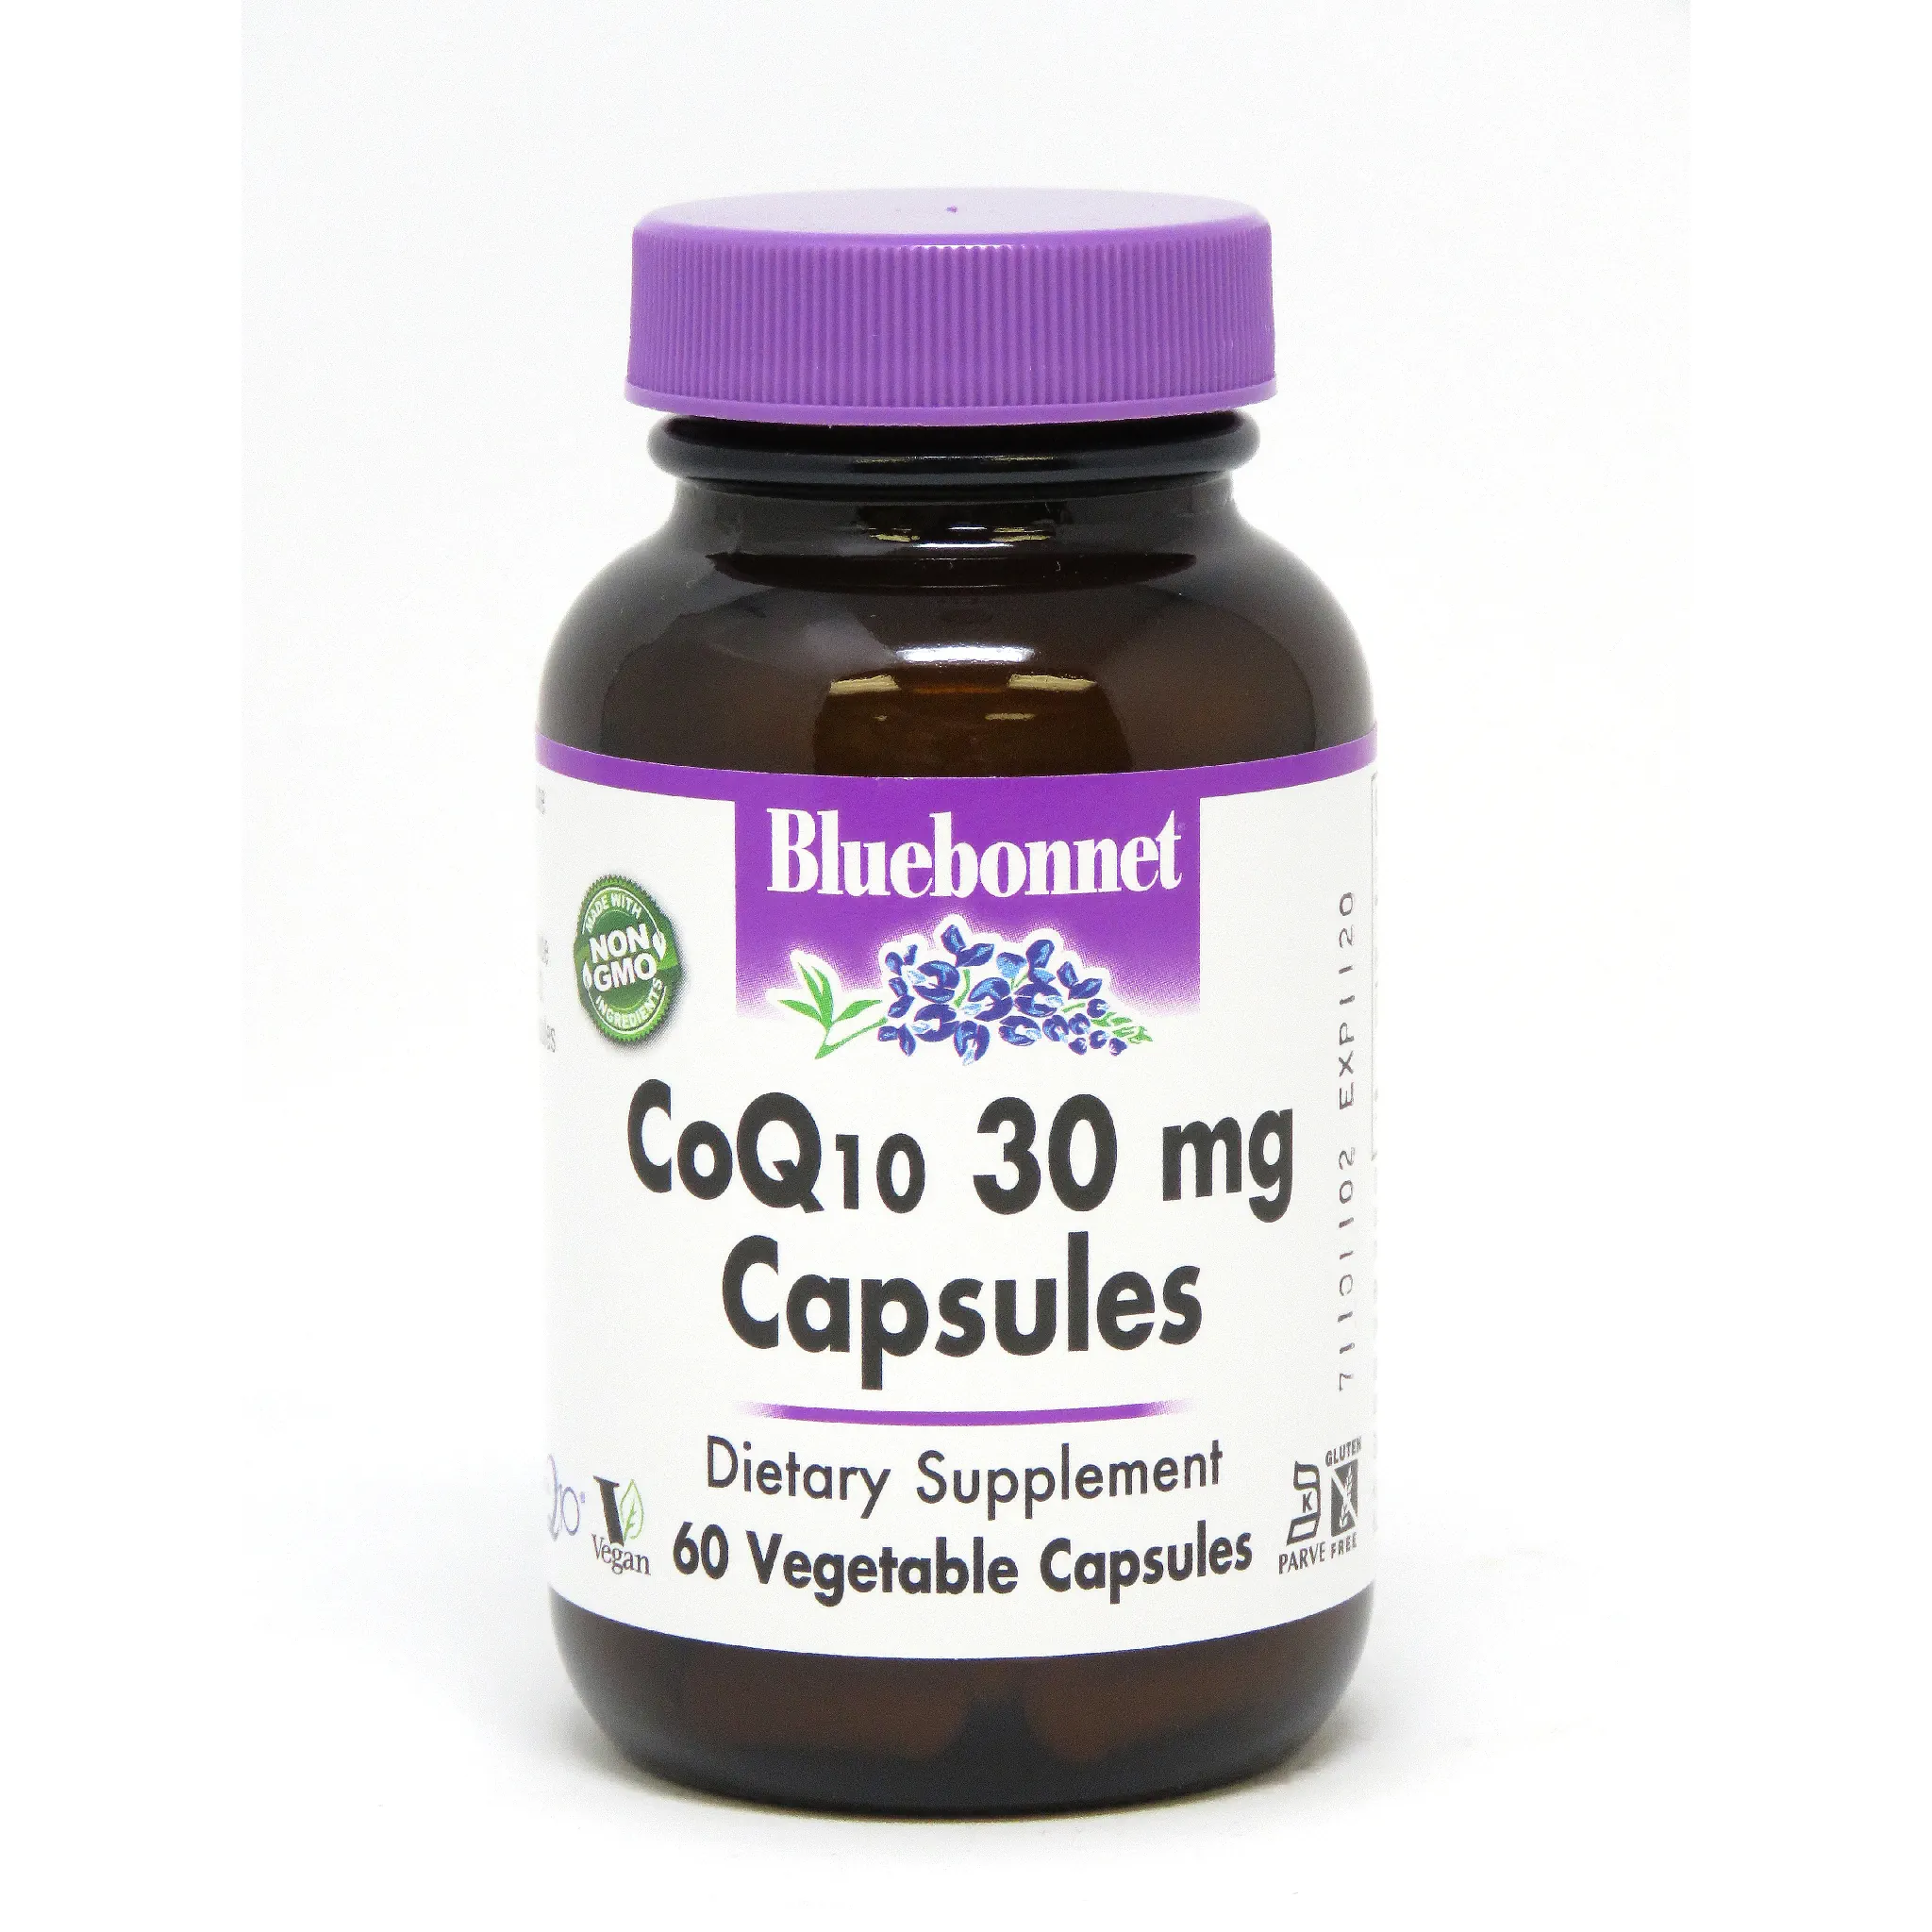 Bluebonnet - Coq10 60 mg softgel